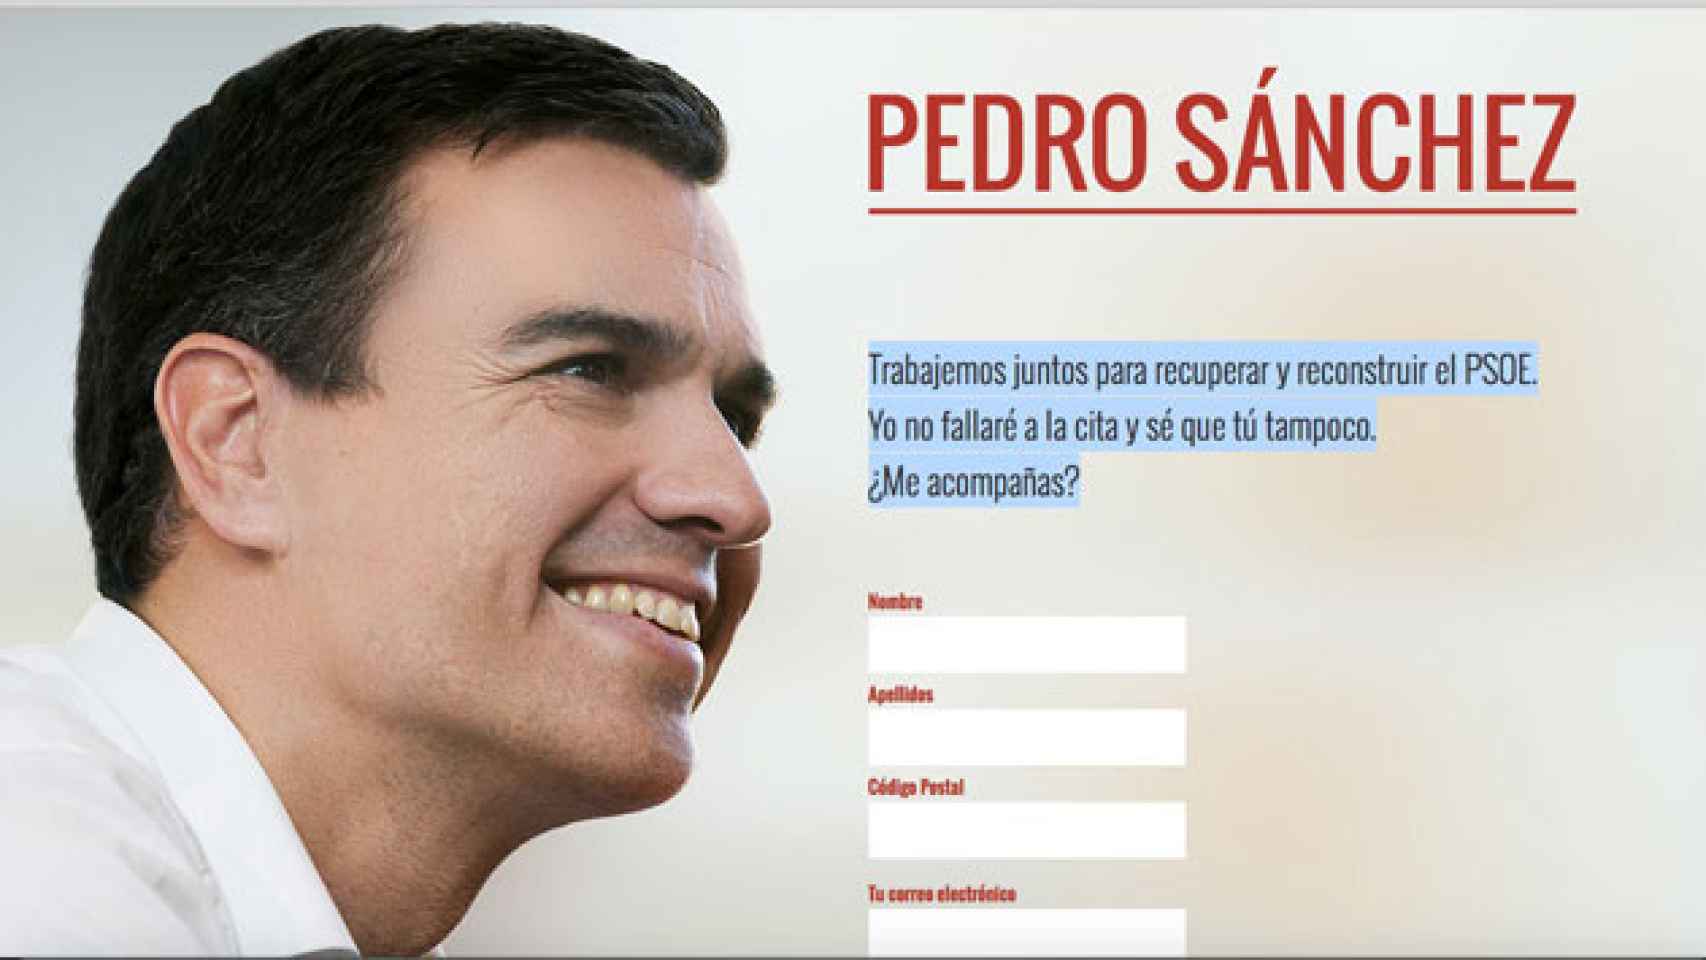 Imagen de la web de campaña de Pedro Sánchez para recuperar el PSOE / CG